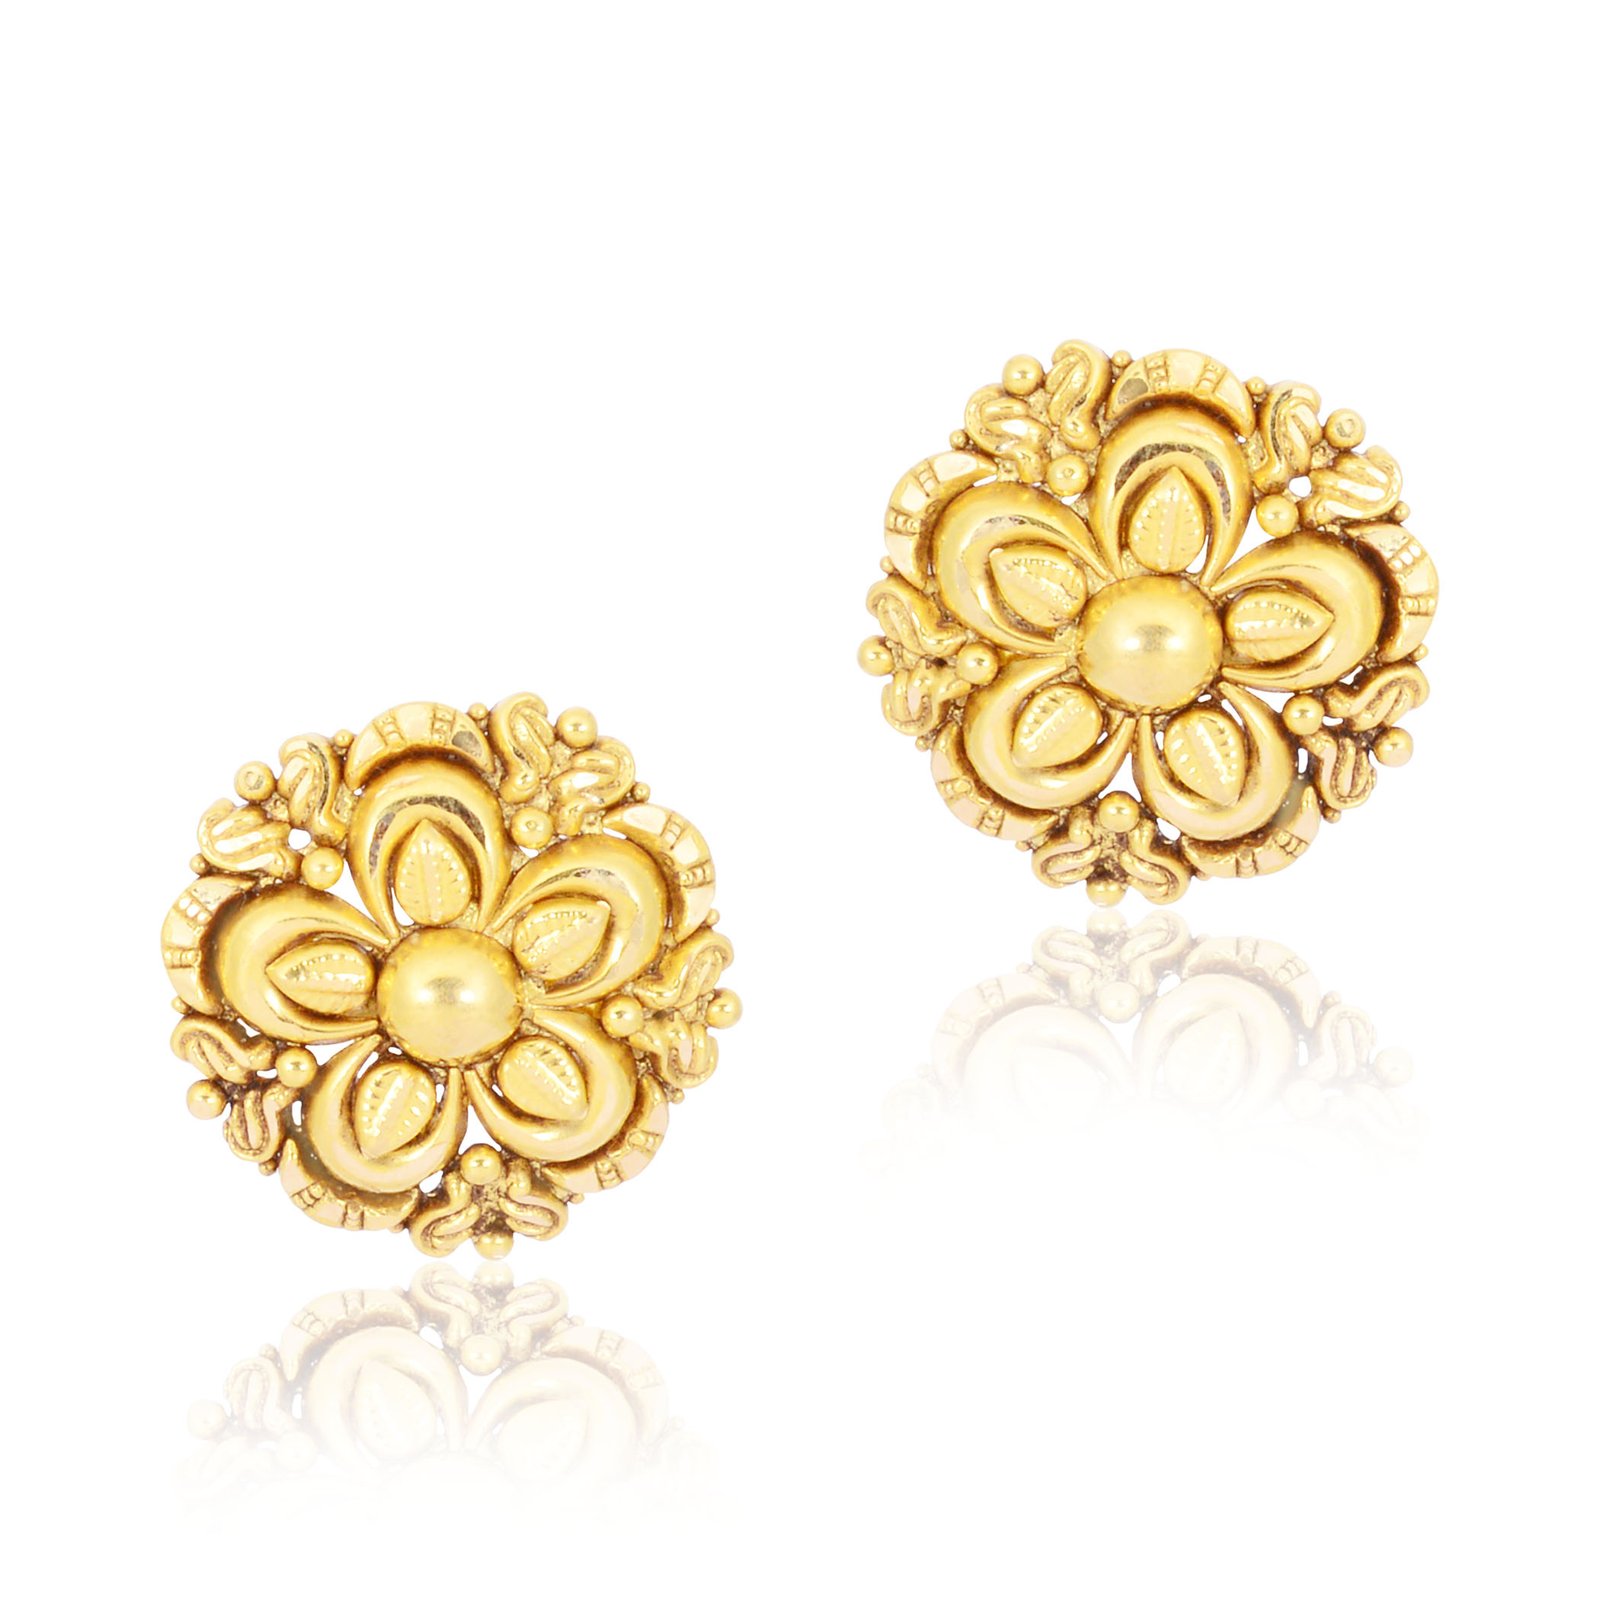 gold earrings - navkkar jewellers